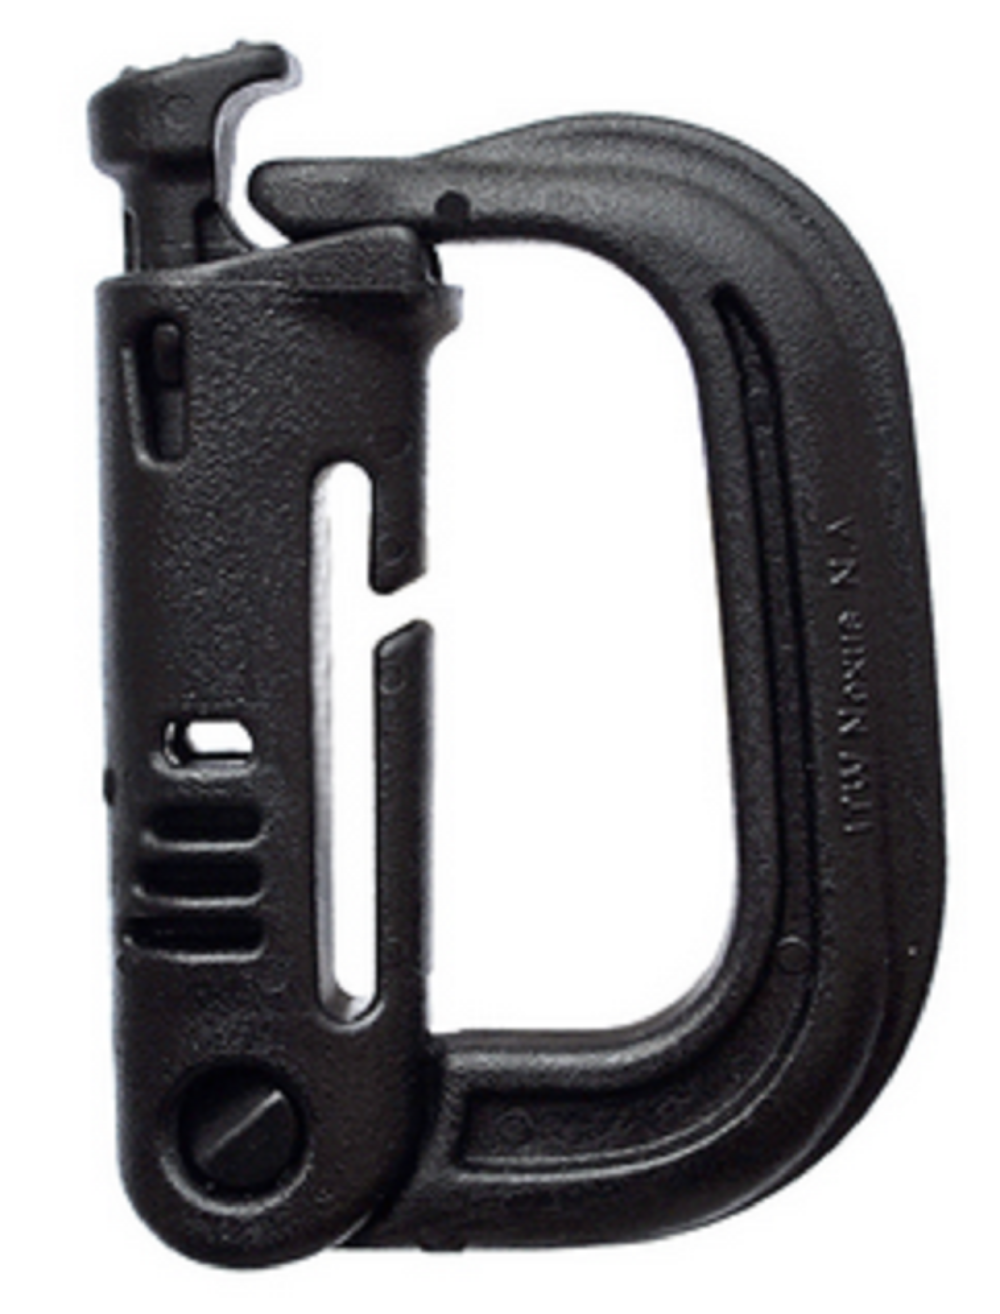 Tac Link Molded Polymer Carabiner | The Tactical Carabiner Clip Black / 1000 Pack